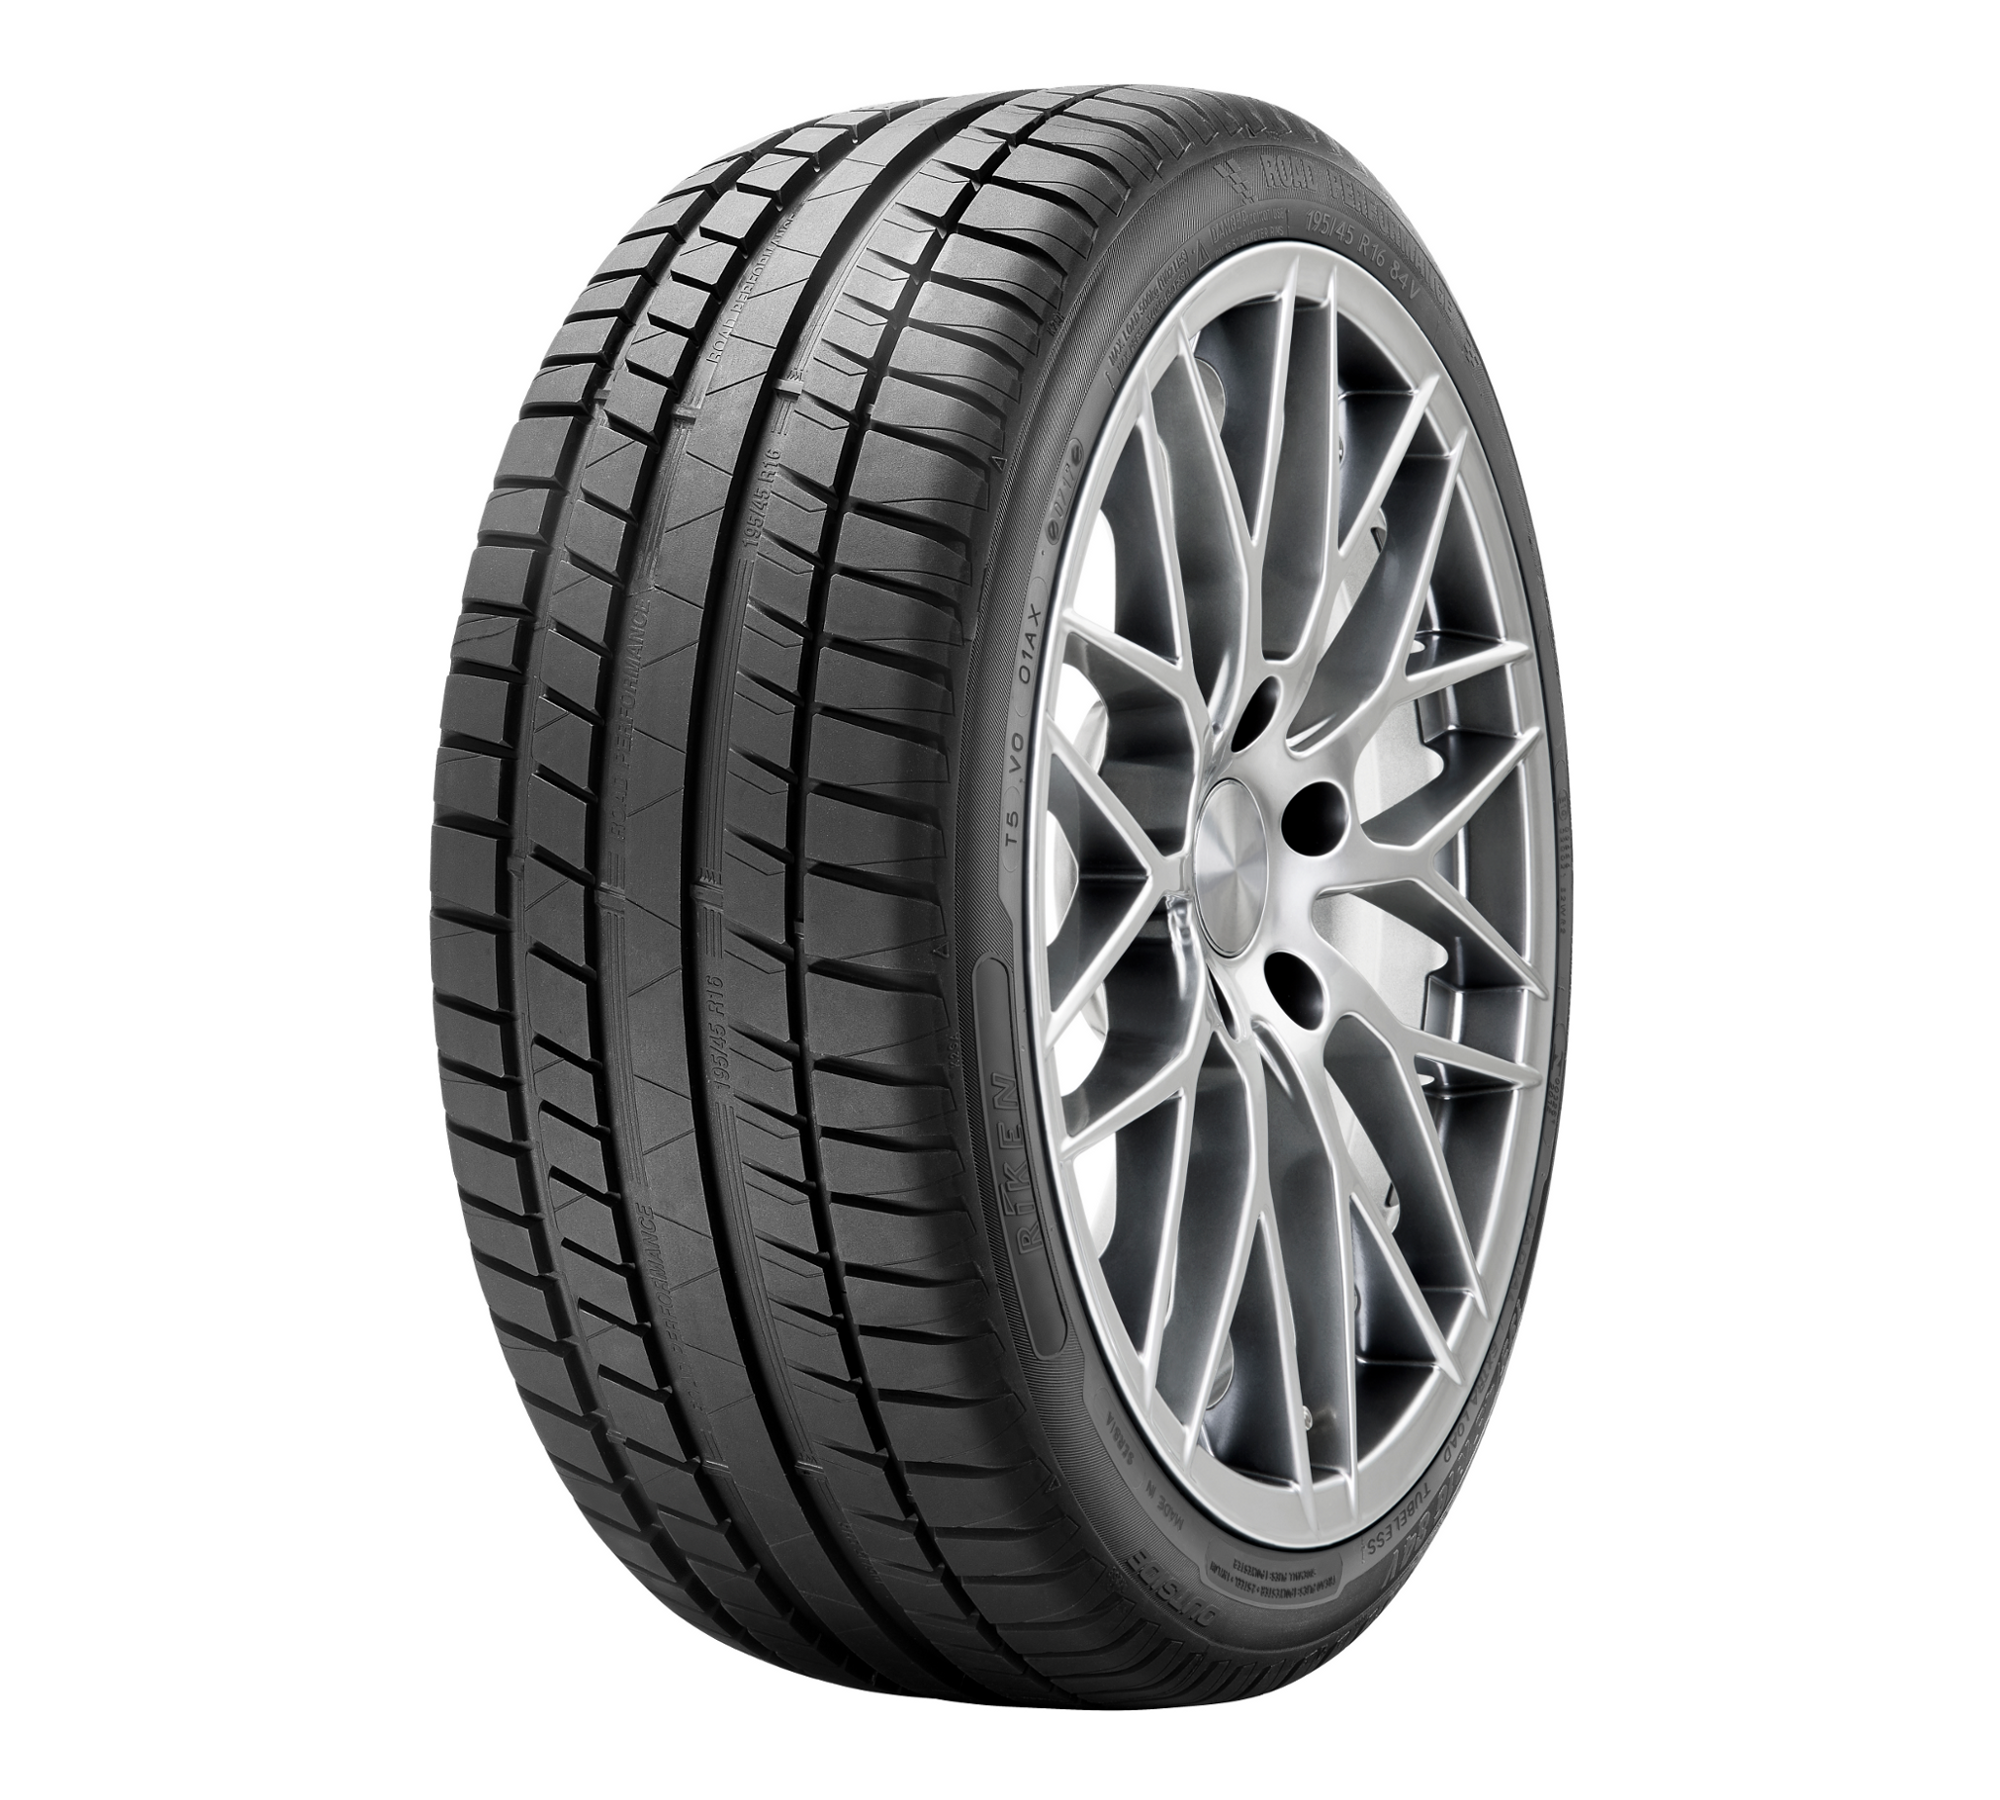 1x Neumáticos de verano Riken by Michelin Road Performance 215/45R16 90V EL 